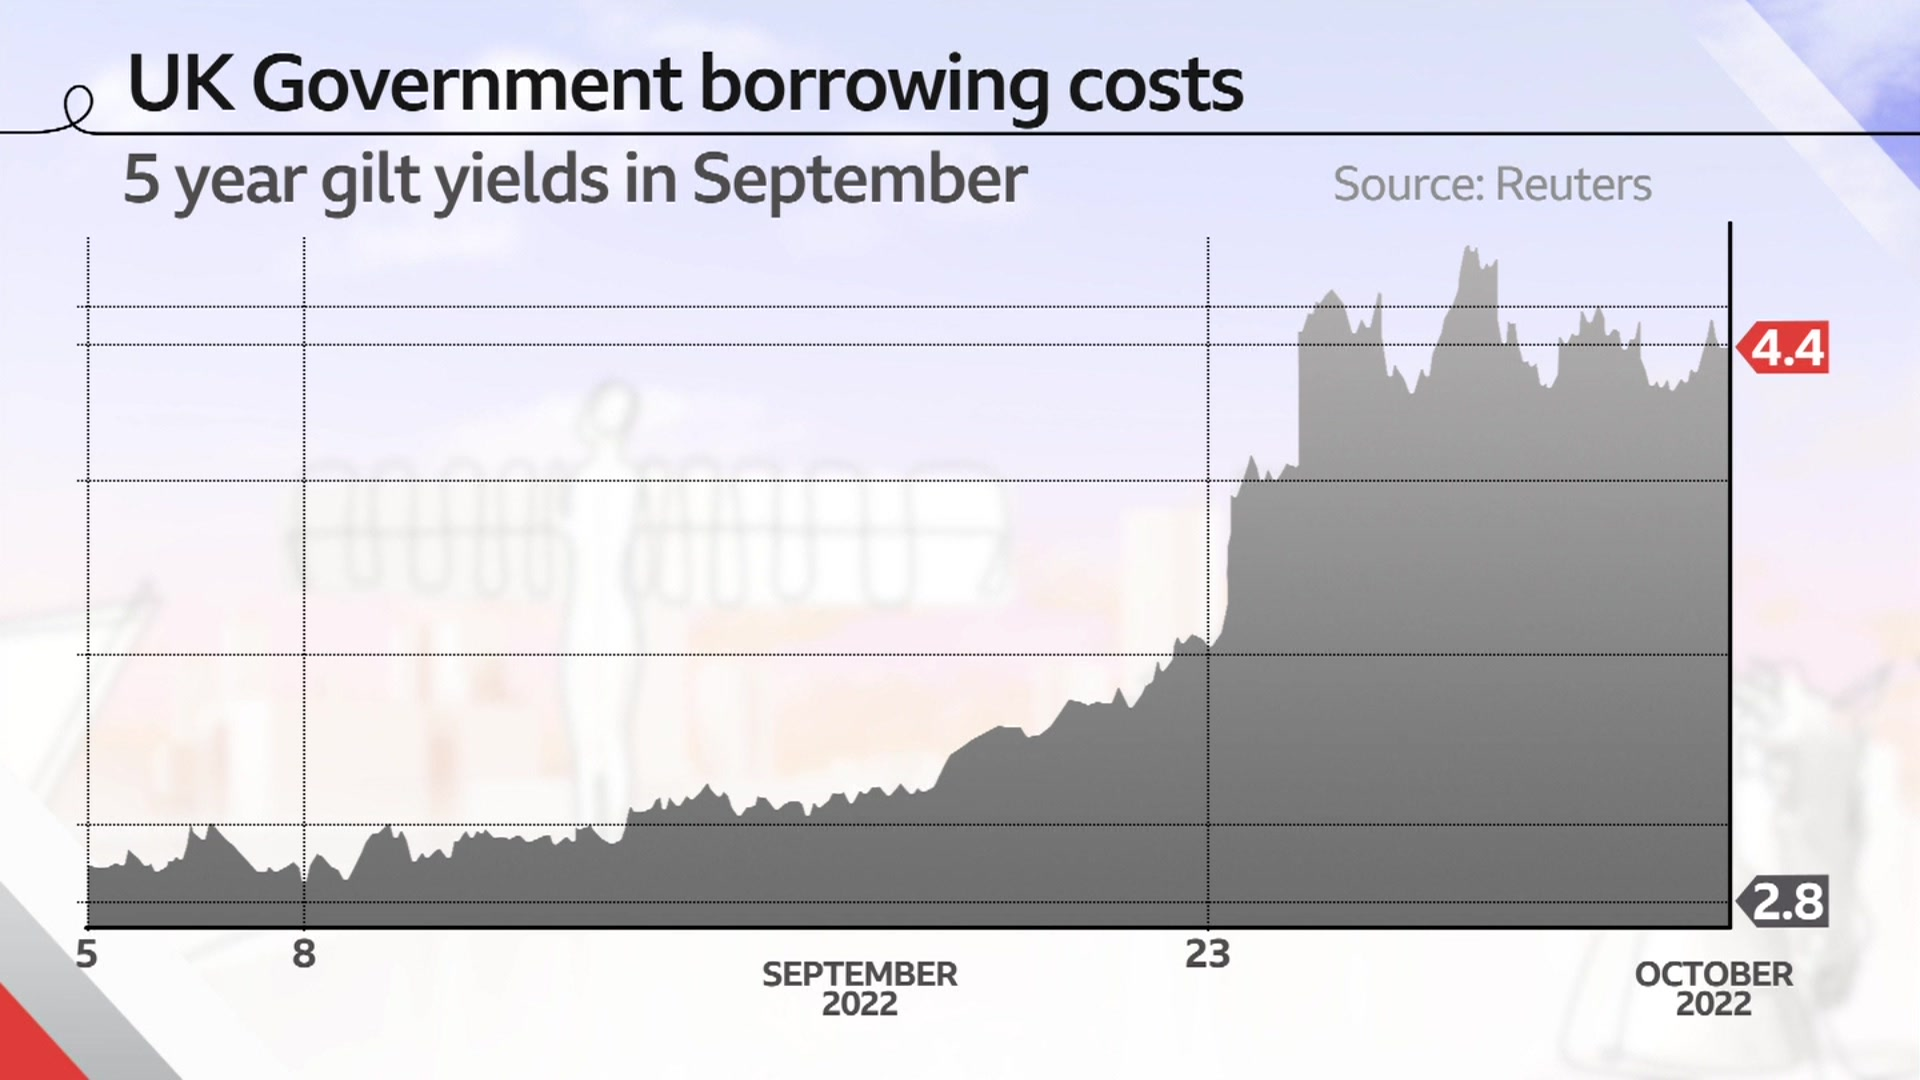 Диаграмма, показывающая стоимость заимствований правительства Великобритании в сентябре 2022 года и большой скачок стоимости после мини-бюджета